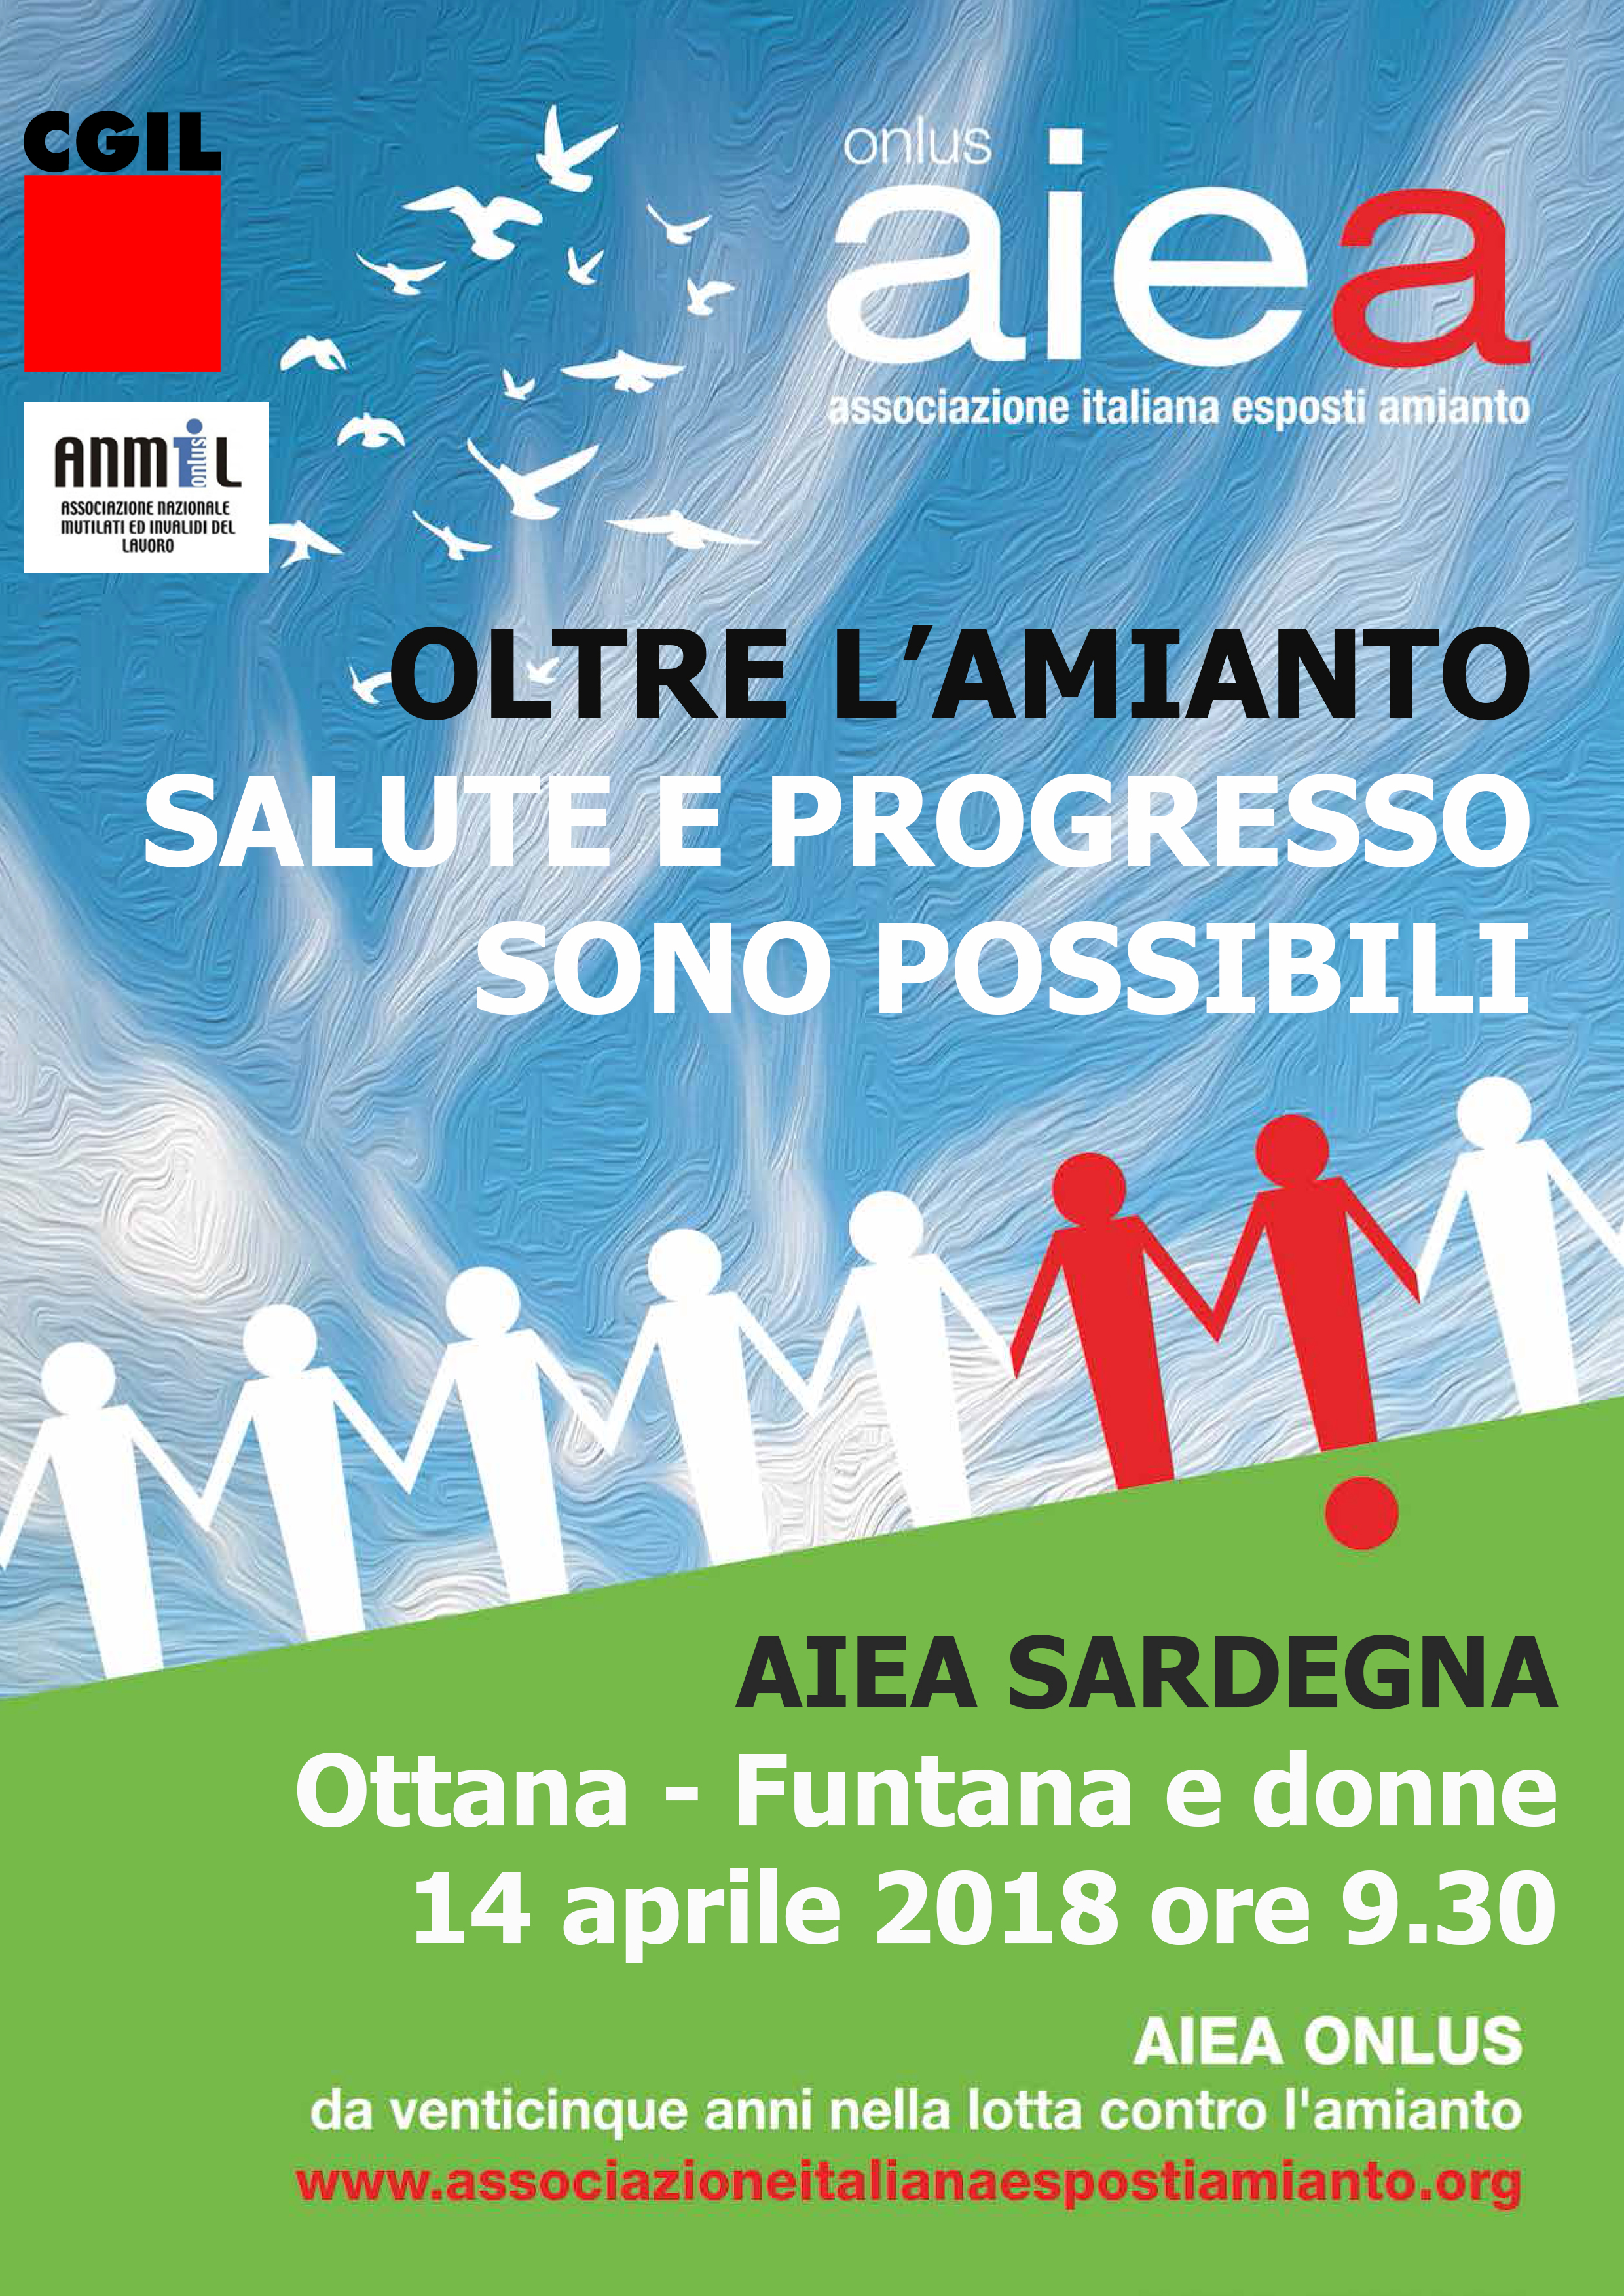 Il 14 aprile a Ottana in provincia di Nuoro si terrà la riunione di Aiea Sardegna, con Cgil e Anmil. Ore 9.30 presso Funtana e donne.